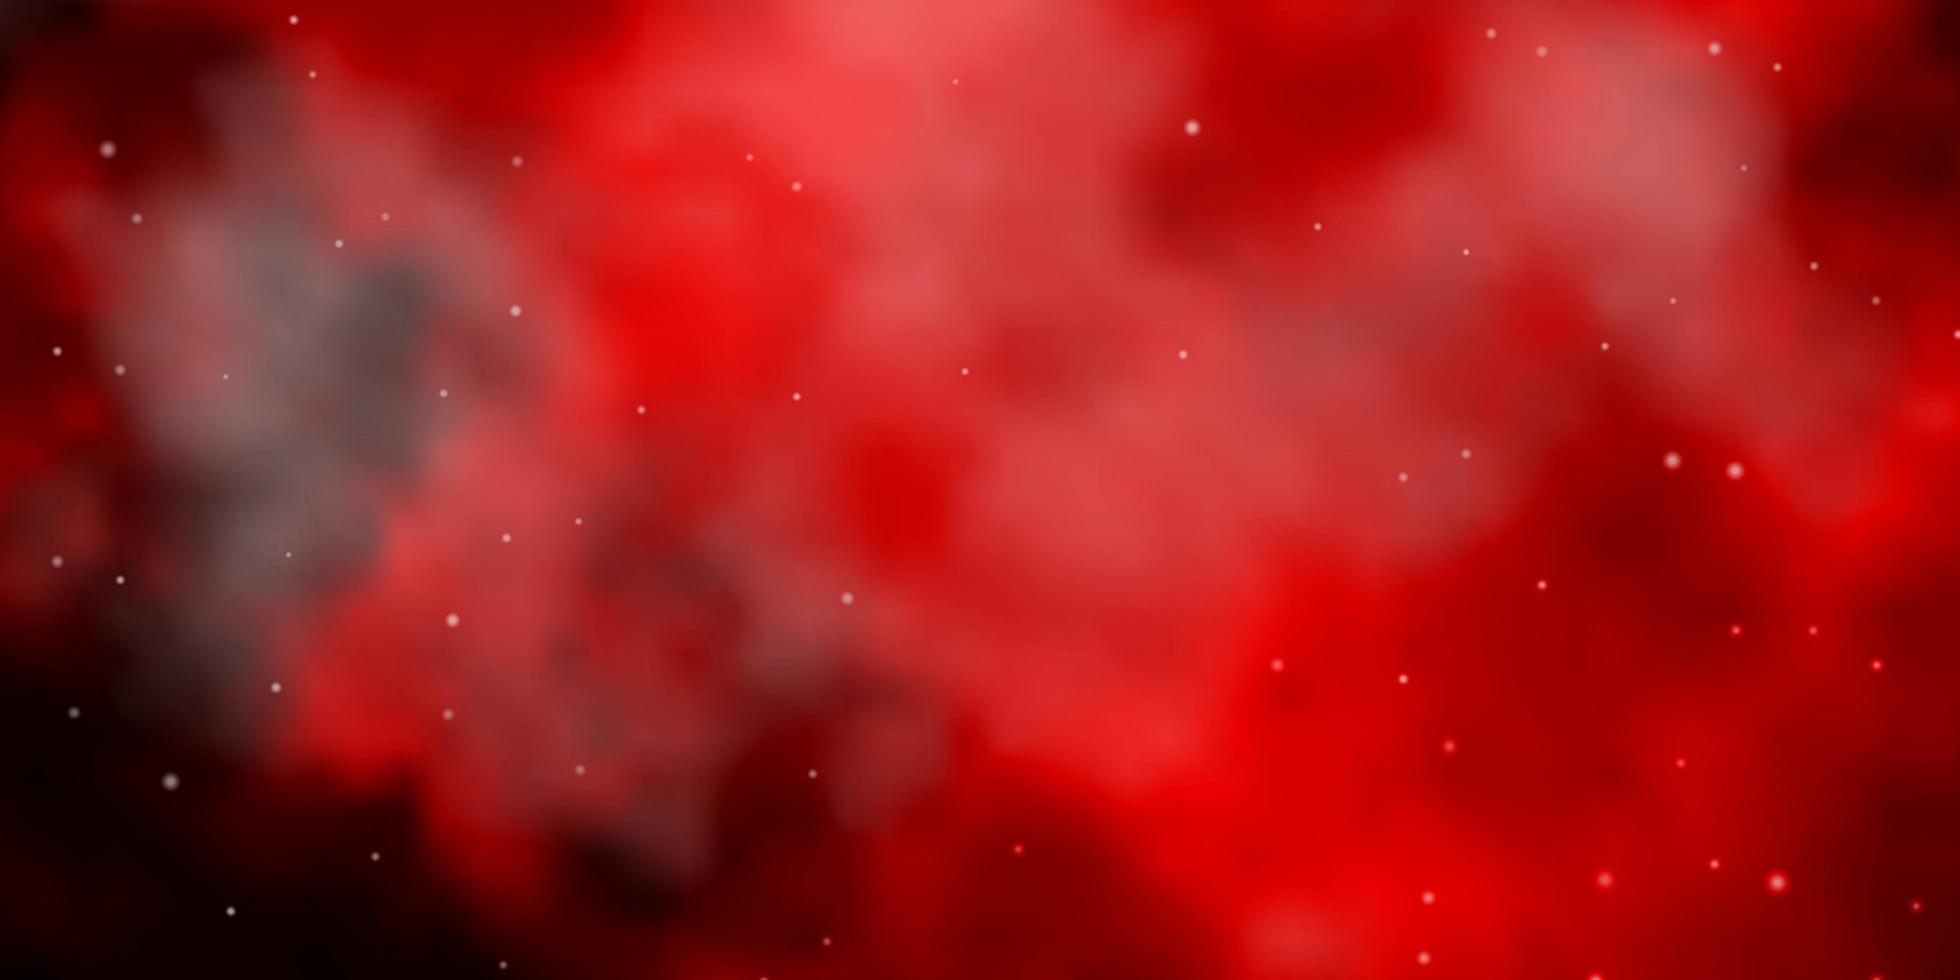 textura vector vermelho escuro com belas estrelas.